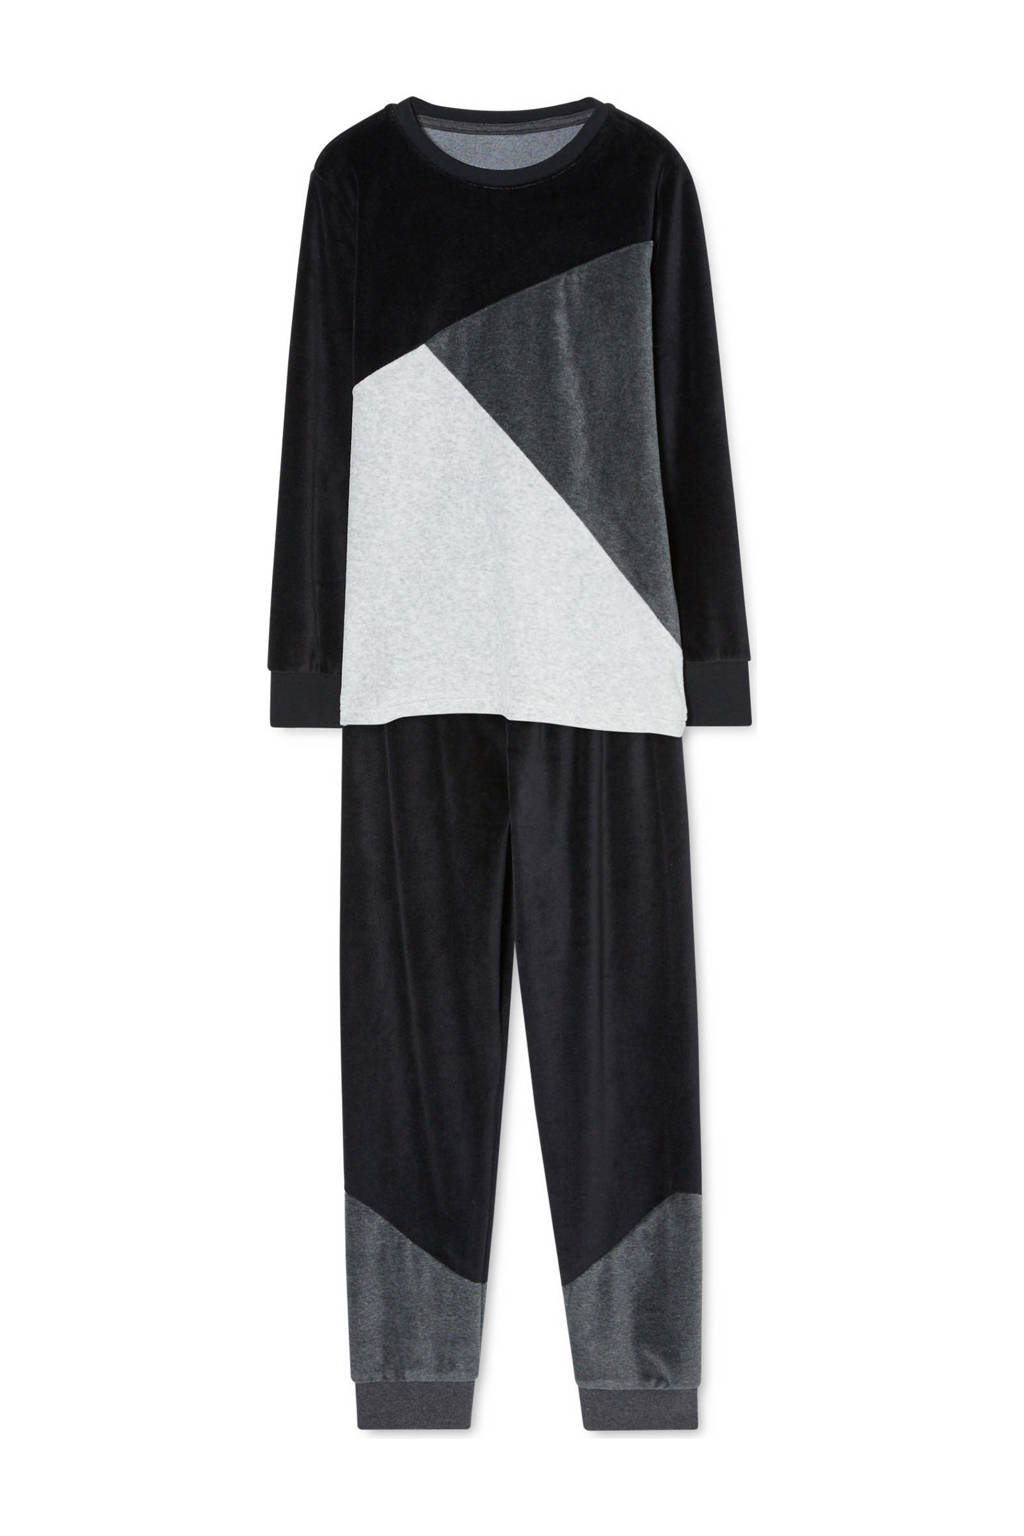 C&A   fleece pyjama met grafische print zwart, Zwart